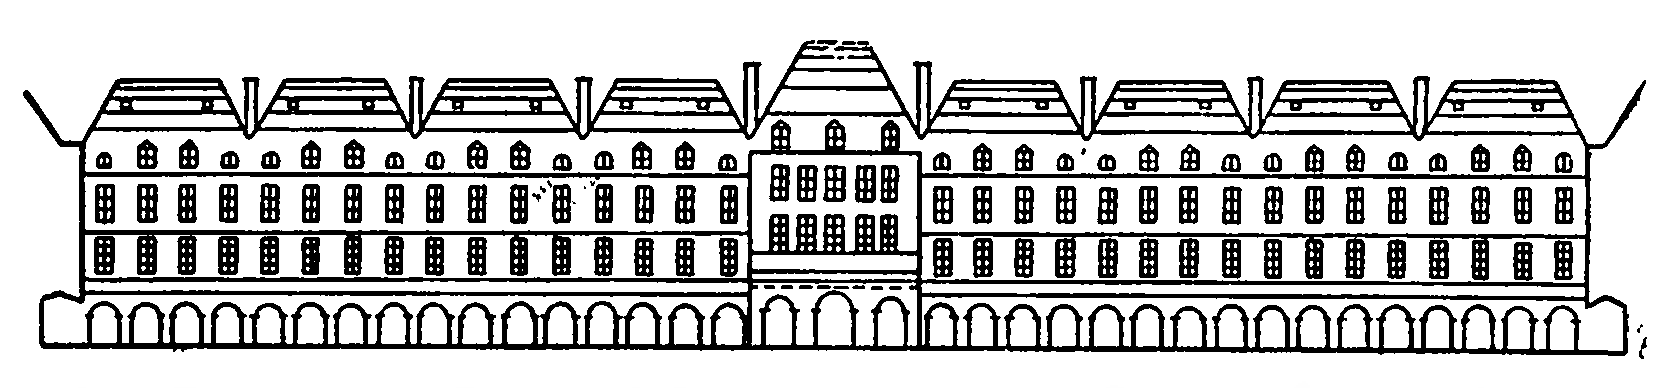 Королевская площадь, схема домов 1605 г., К. Шатийон и А. Аллейом